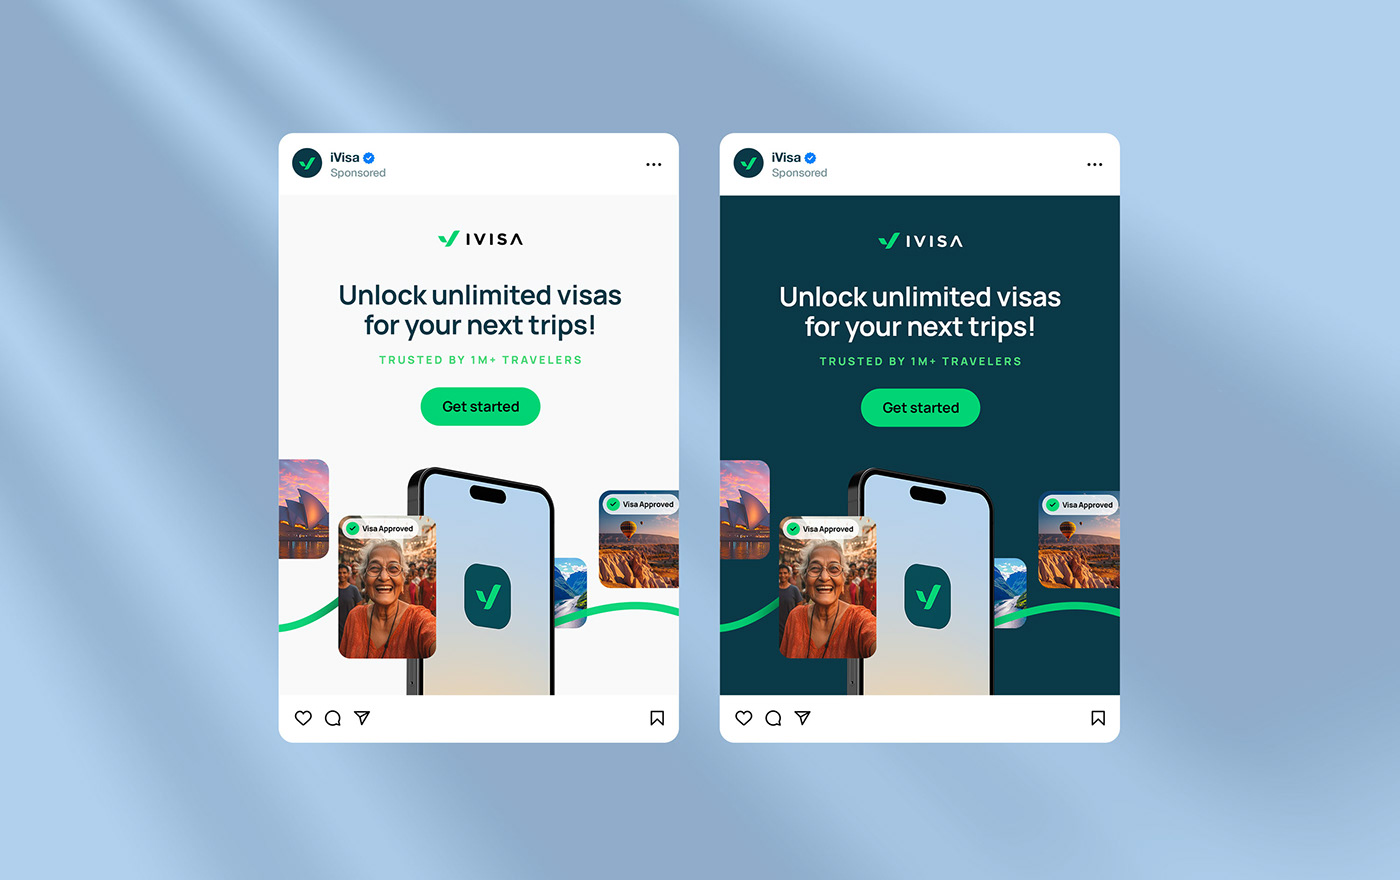 visual identity ads Social media post Travel travel design Visa traveling Instagram Post Socialmedia Social Media Design